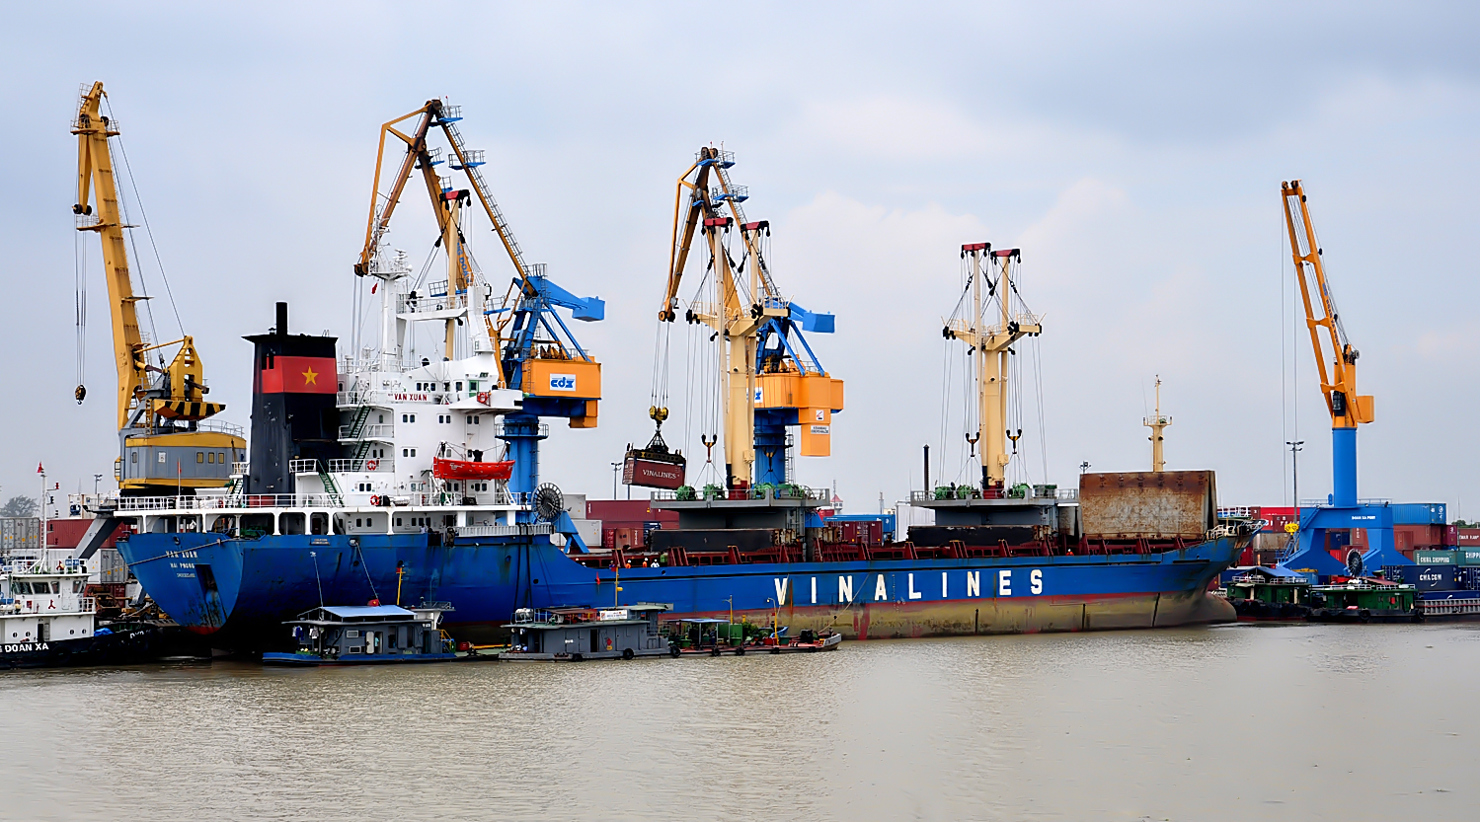 Thực hiện nhiệm vụ Chính phủ giao, DATC rất tích cực trong việc xử lý nợ xấu, tái cơ cấu các DN thuộc Tổng công ty Công nghiệp tàu thủy Việt Nam. Nguồn: internet